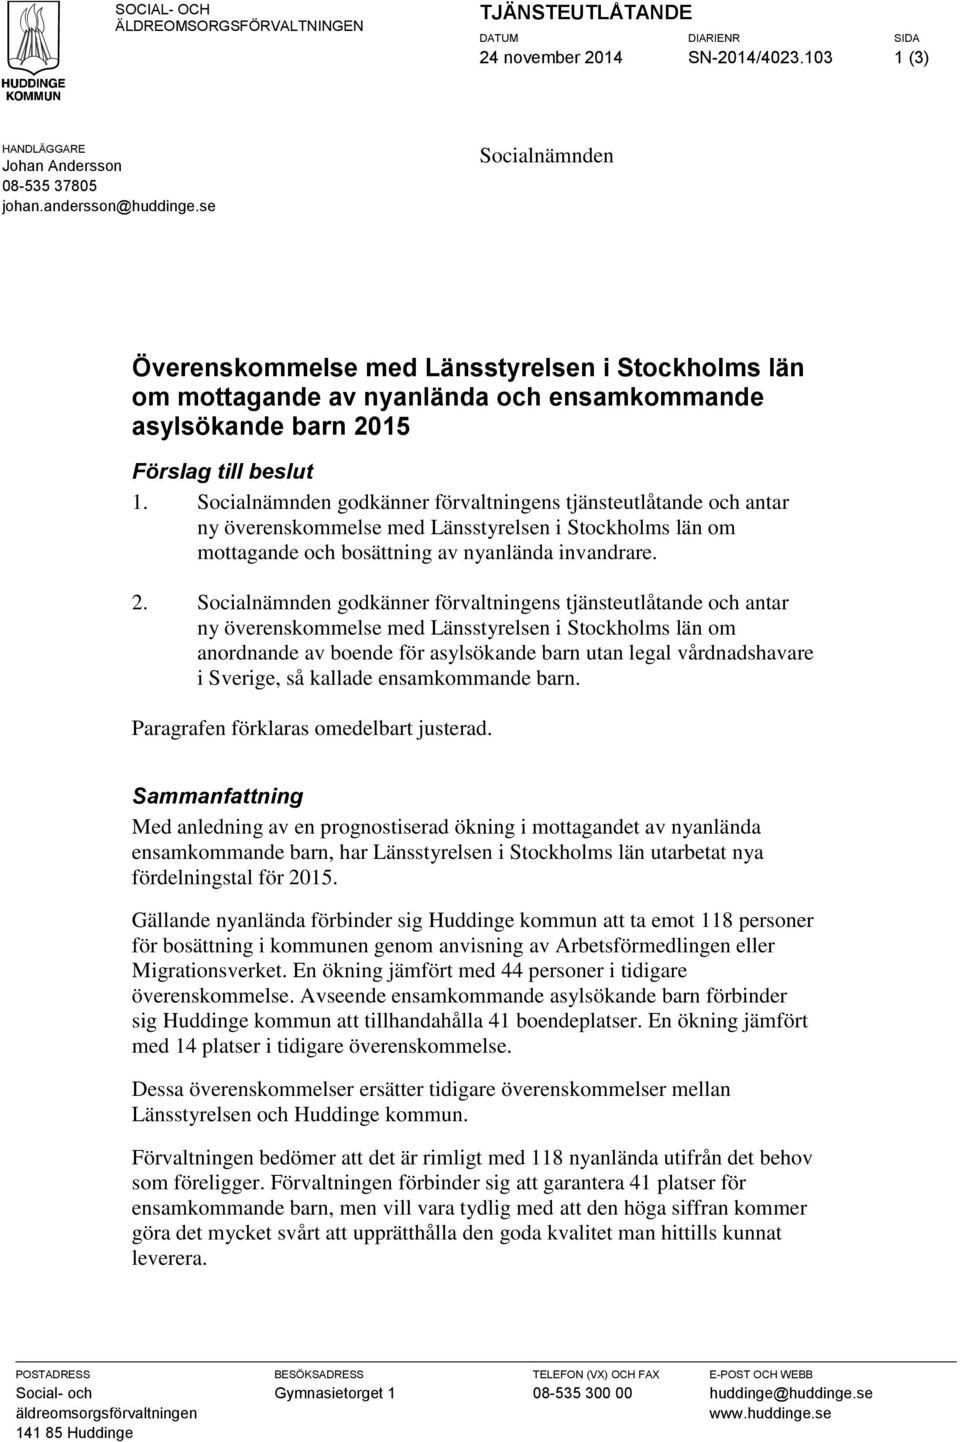 Socialnämnden godkänner förvaltningens tjänsteutlåtande och antar ny överenskommelse med Länsstyrelsen i Stockholms län om mottagande och bosättning av nyanlända invandrare. 2.